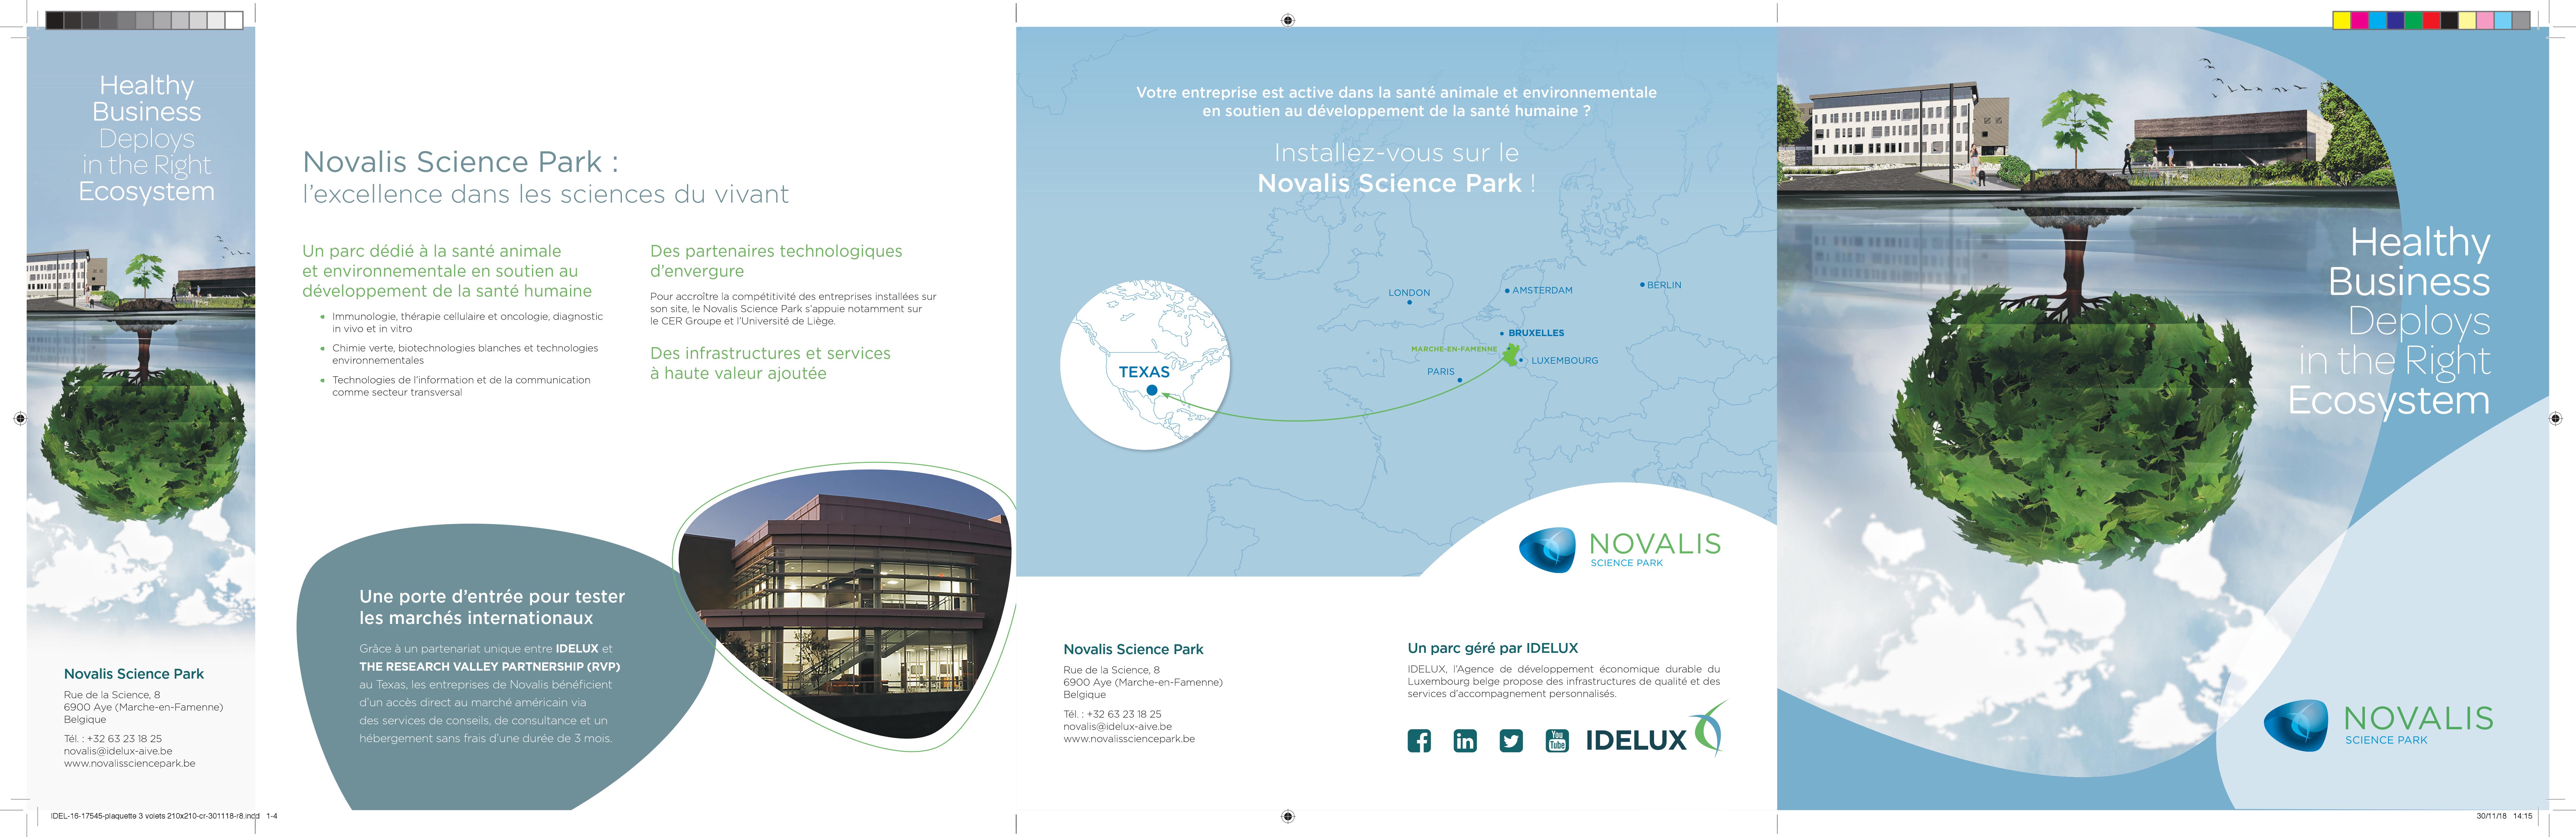 laquette Novalis parc scientifique